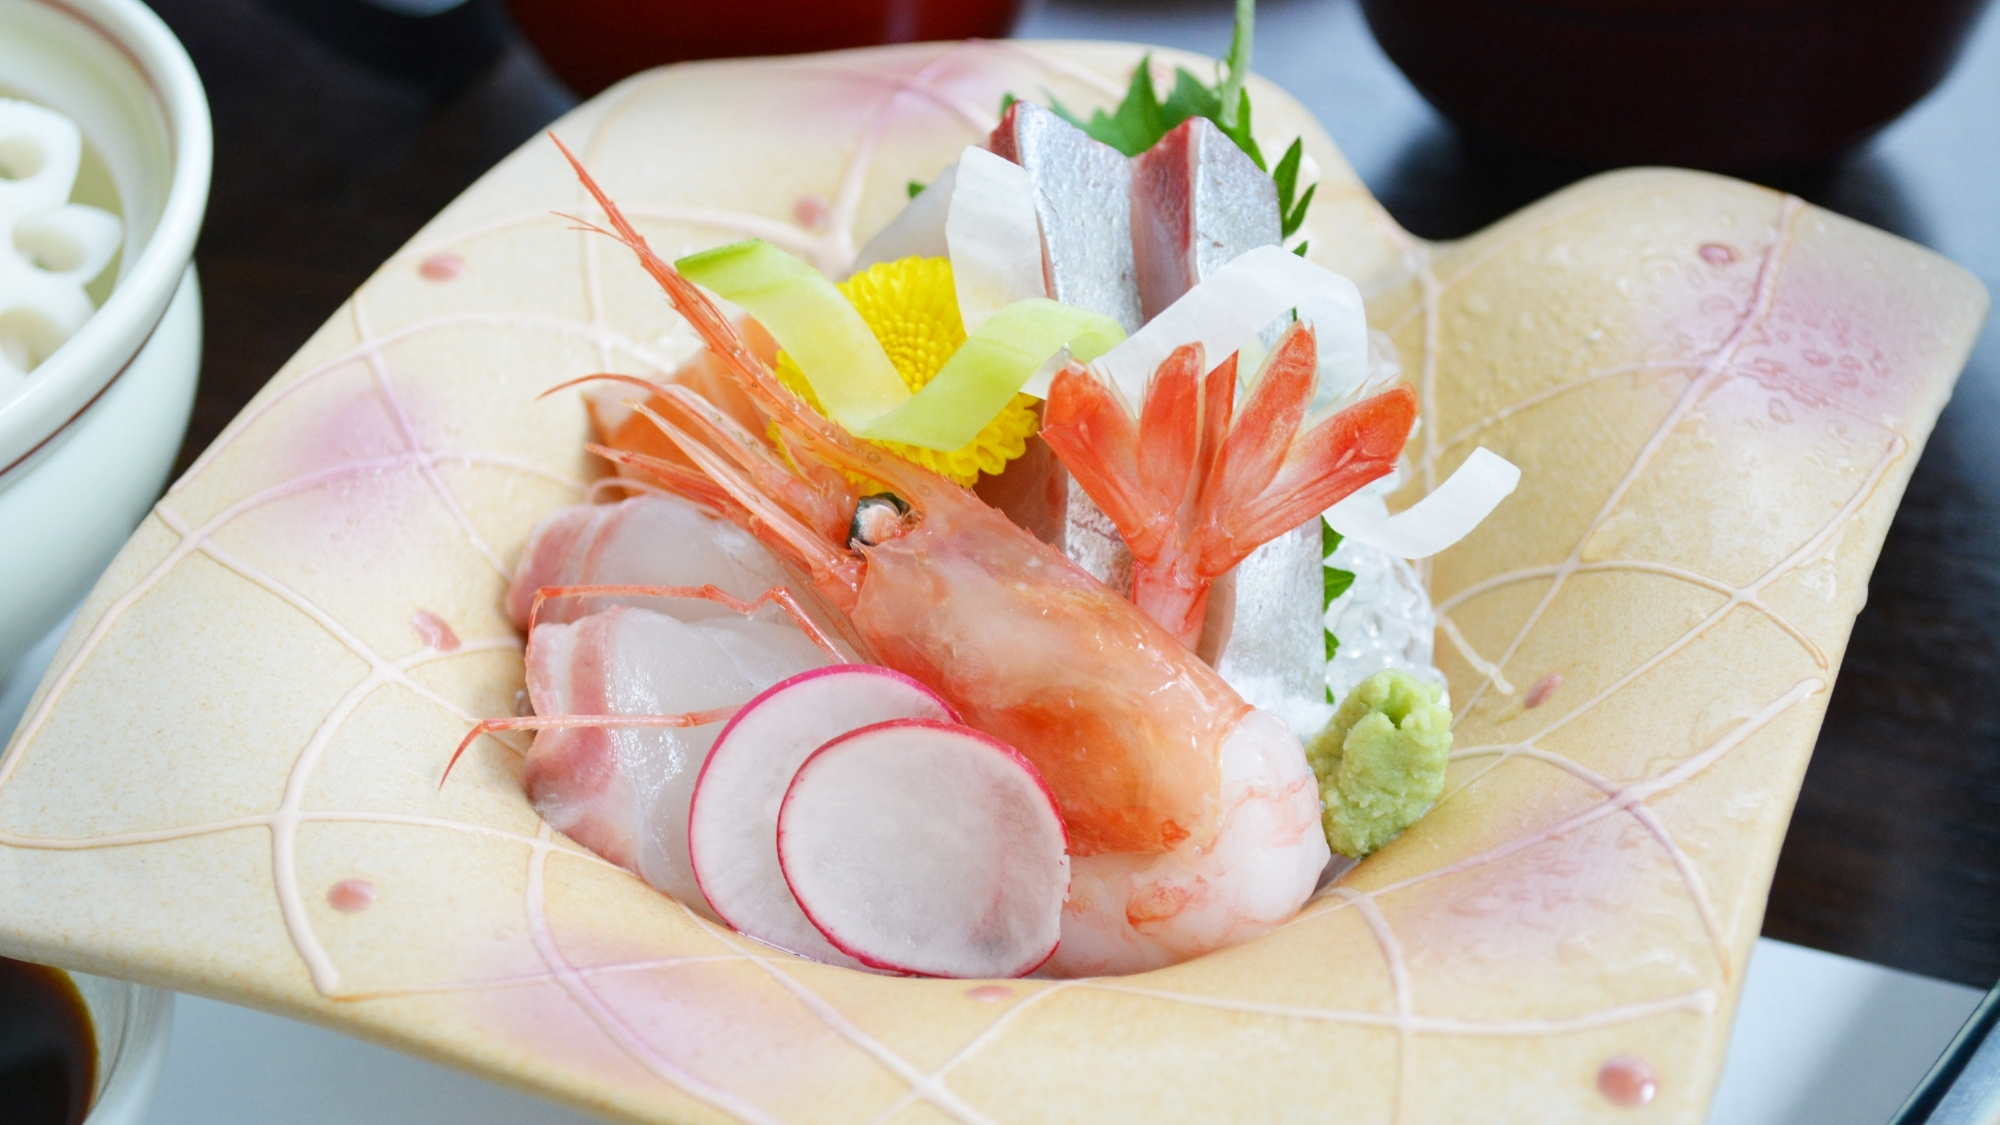 福井の海で獲れた新鮮な海の幸をご賞味ください